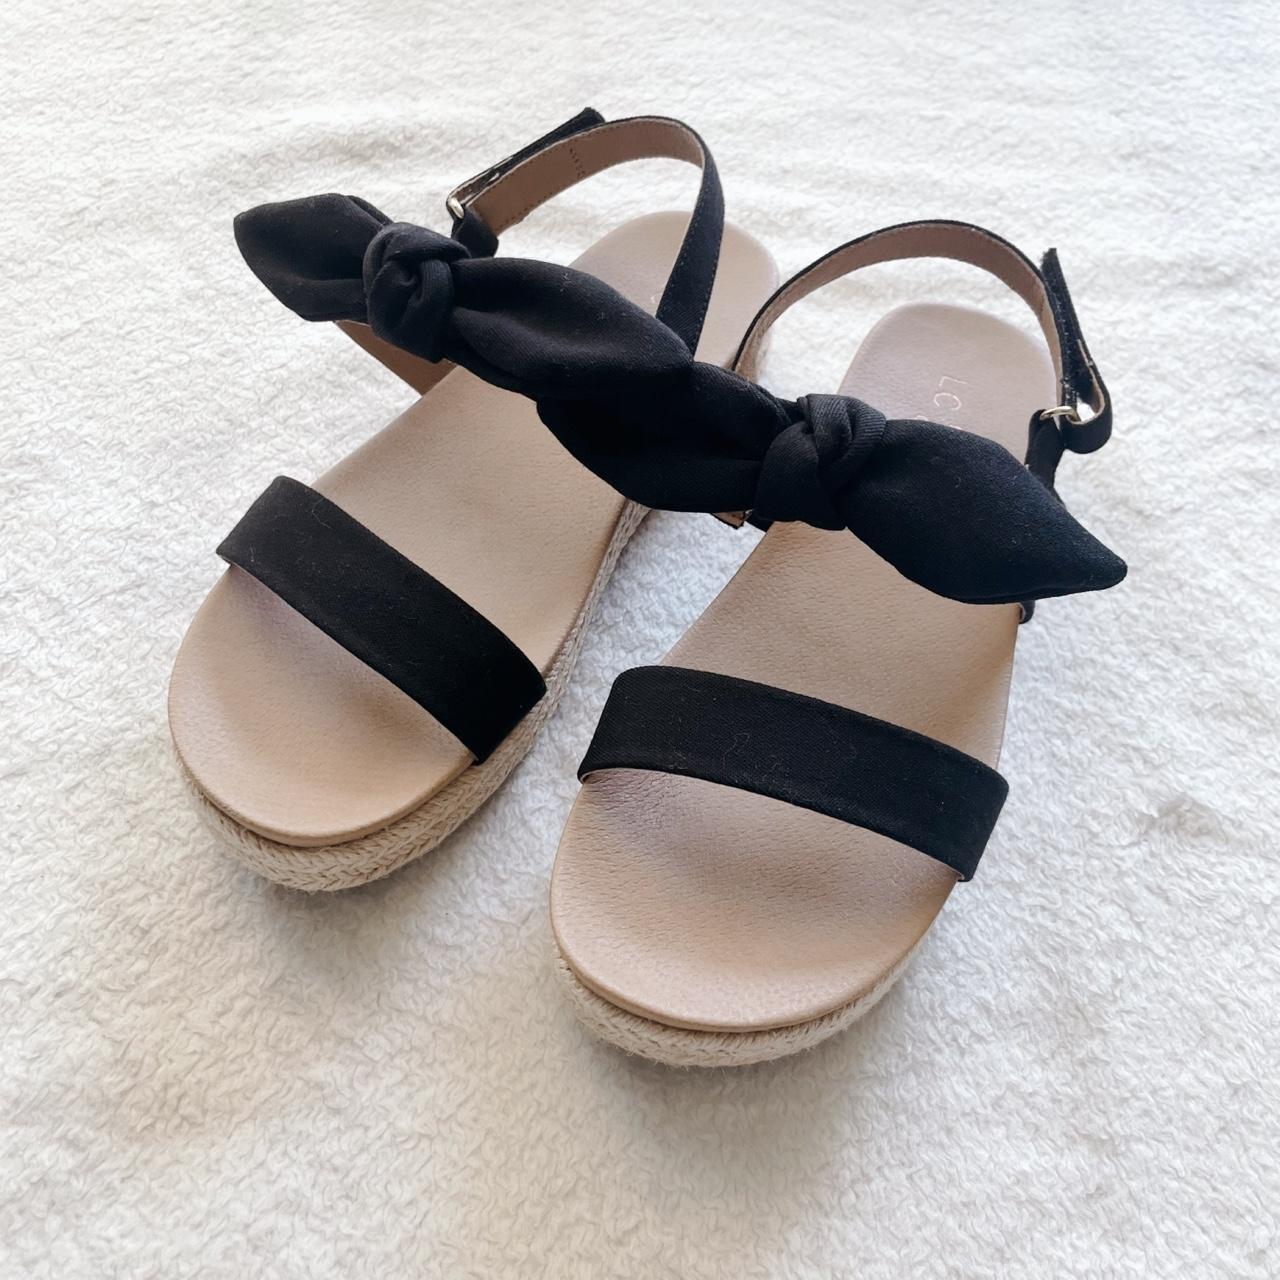 black espadrilles platform sandals 🧺 ♡ bow detail... - Depop